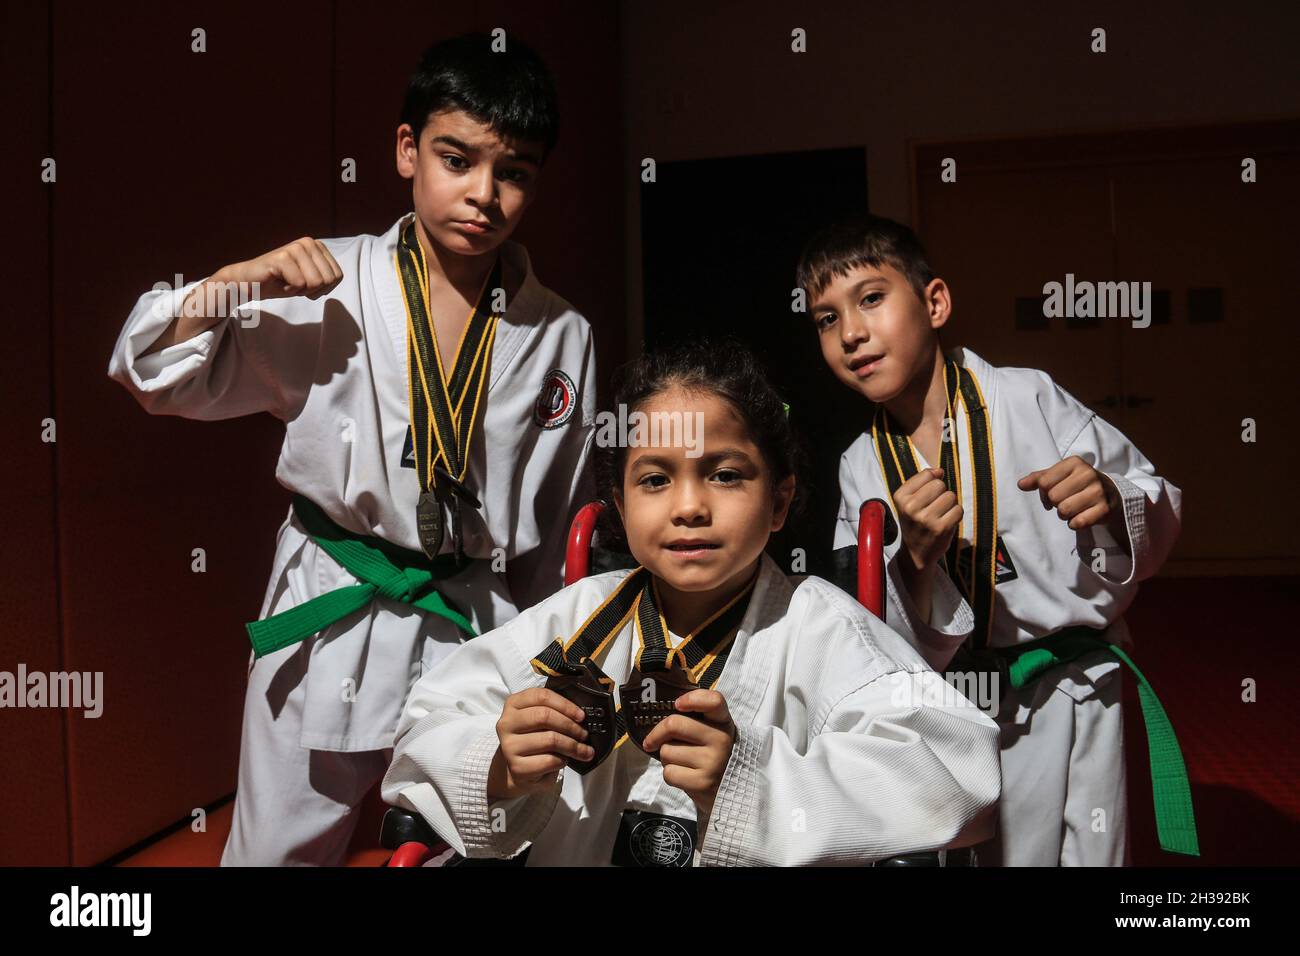 Kinder und Kampfkunst, Karete Kampfkunst, Capoeira, Jiu-jitsu, Judo, kempo,  Kung-Fu, Krav Maga, Muay Tha Boxing. (Foto von Luis Gutierrez Norte P  Stockfotografie - Alamy